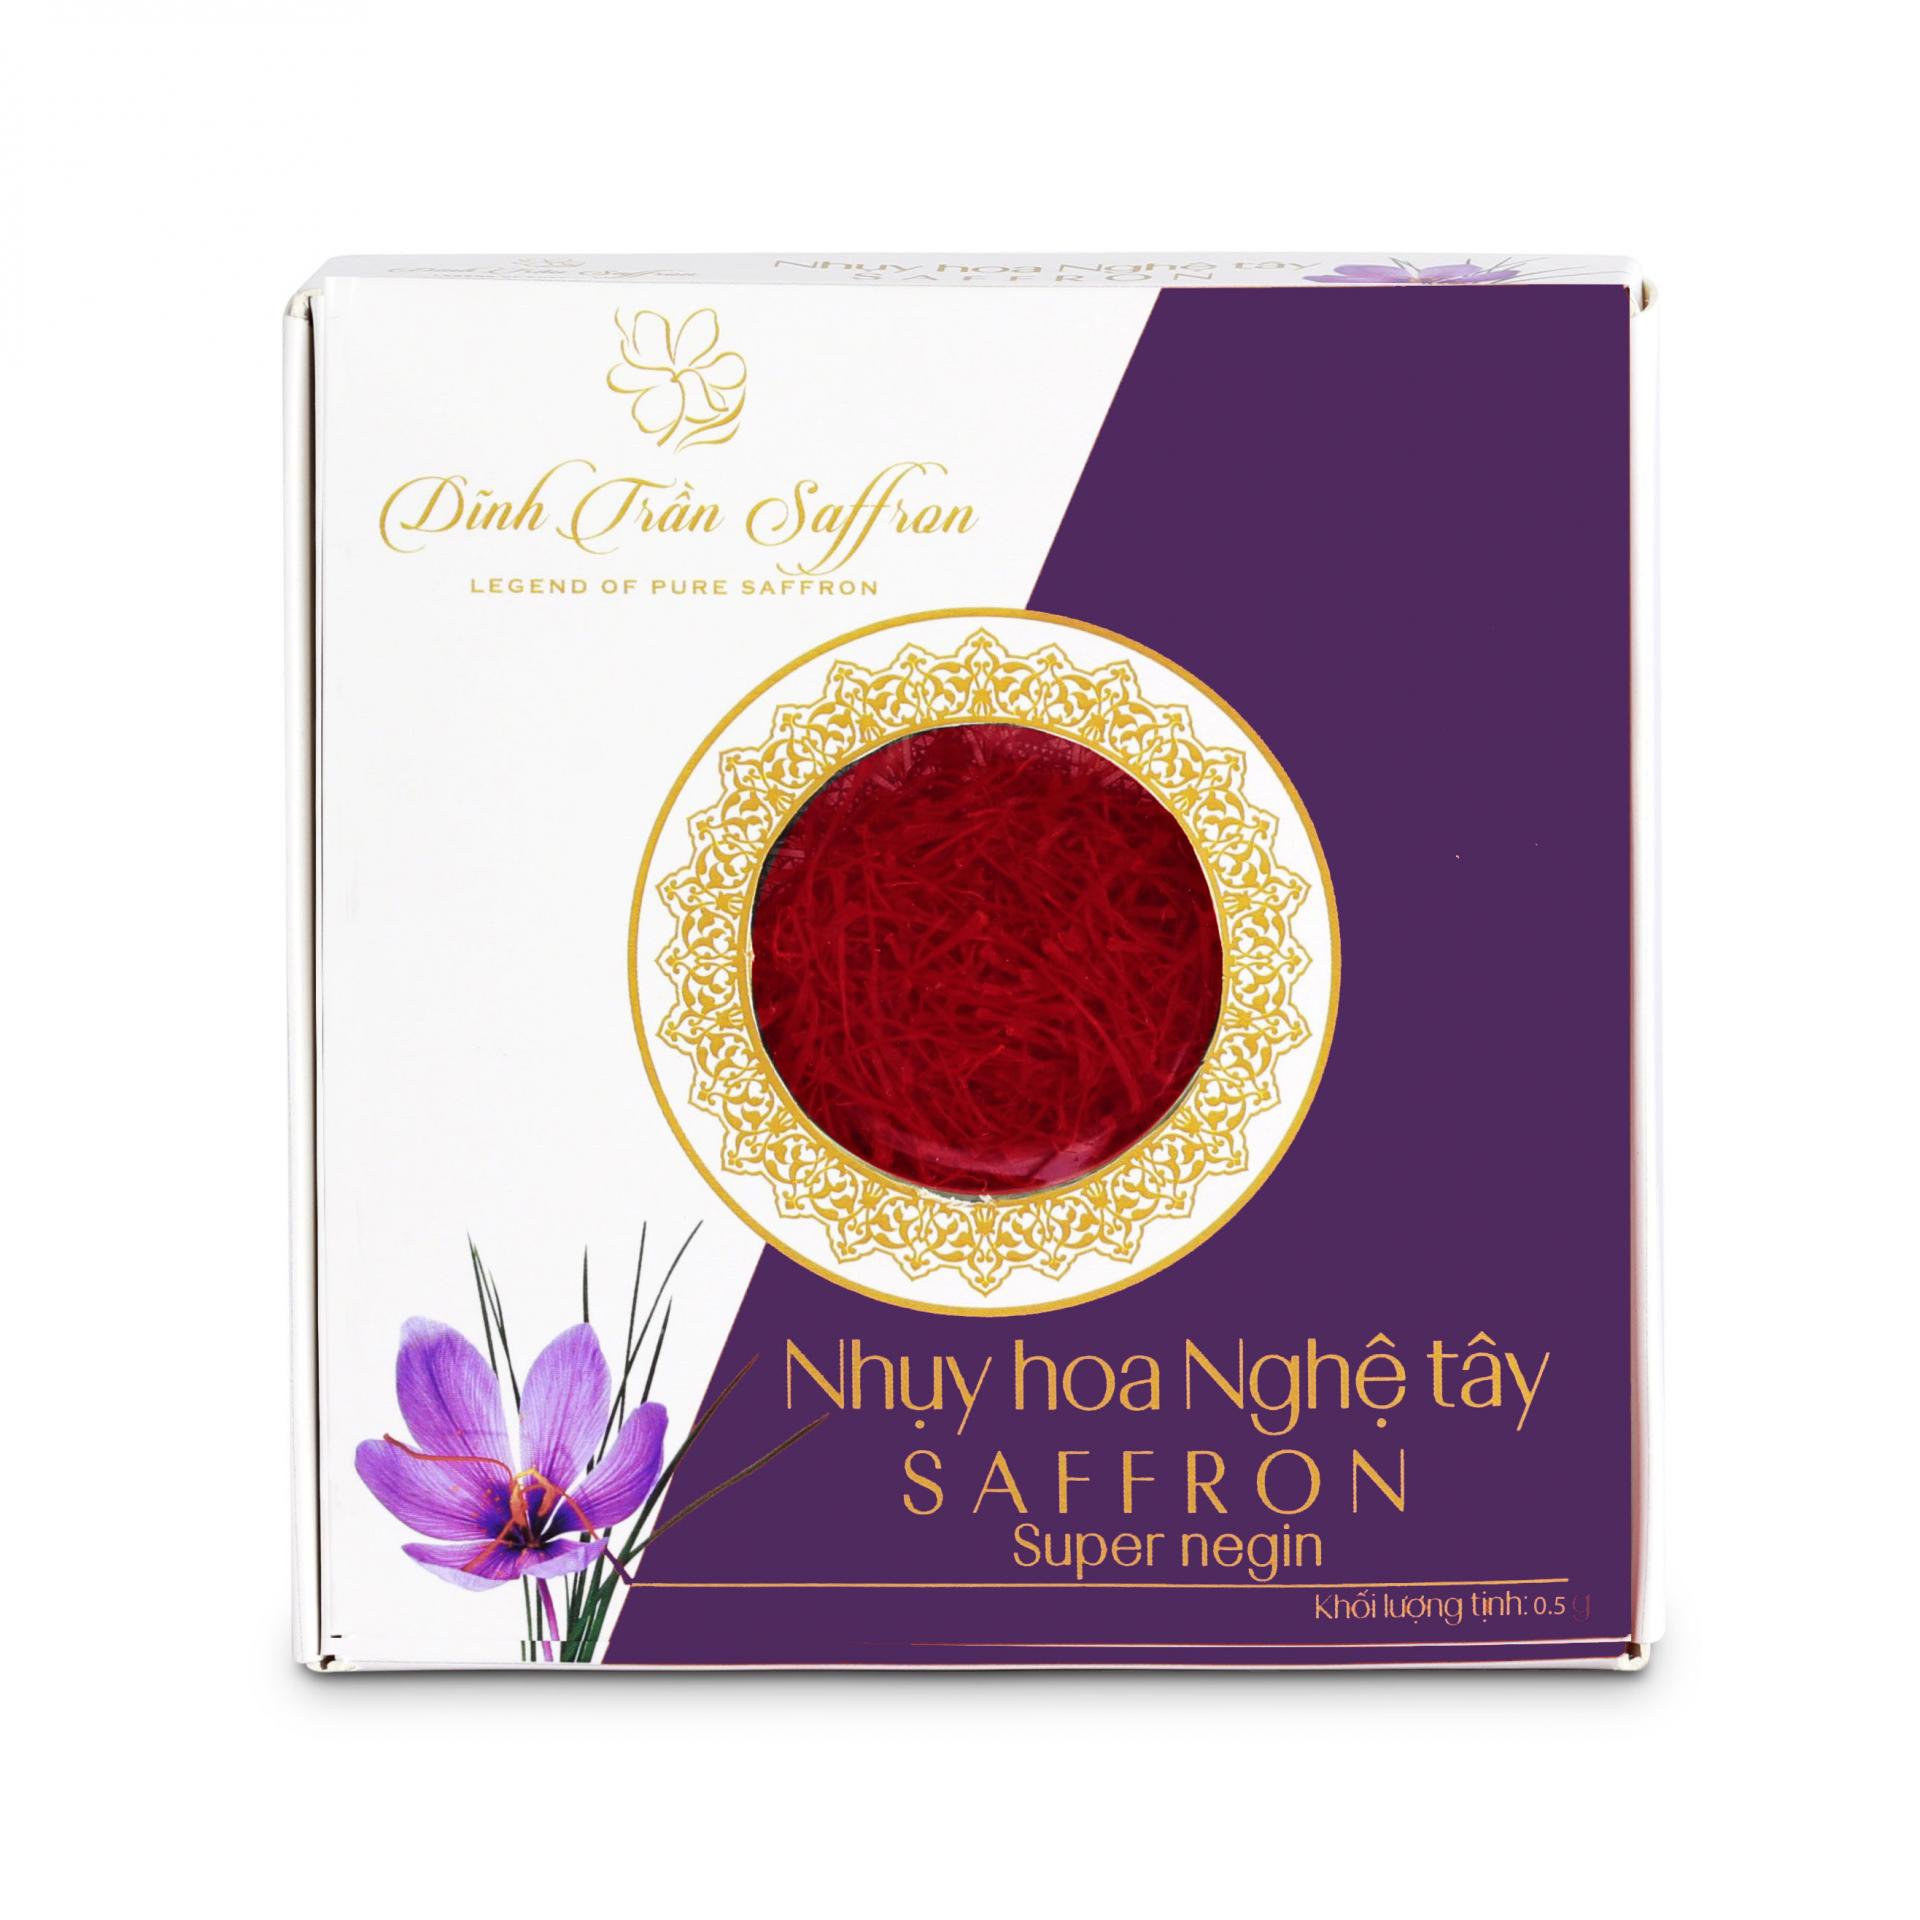 Saffron Dĩnh Trần - Nhụy hoa Nghệ tây từ Iran - 0.5 gram